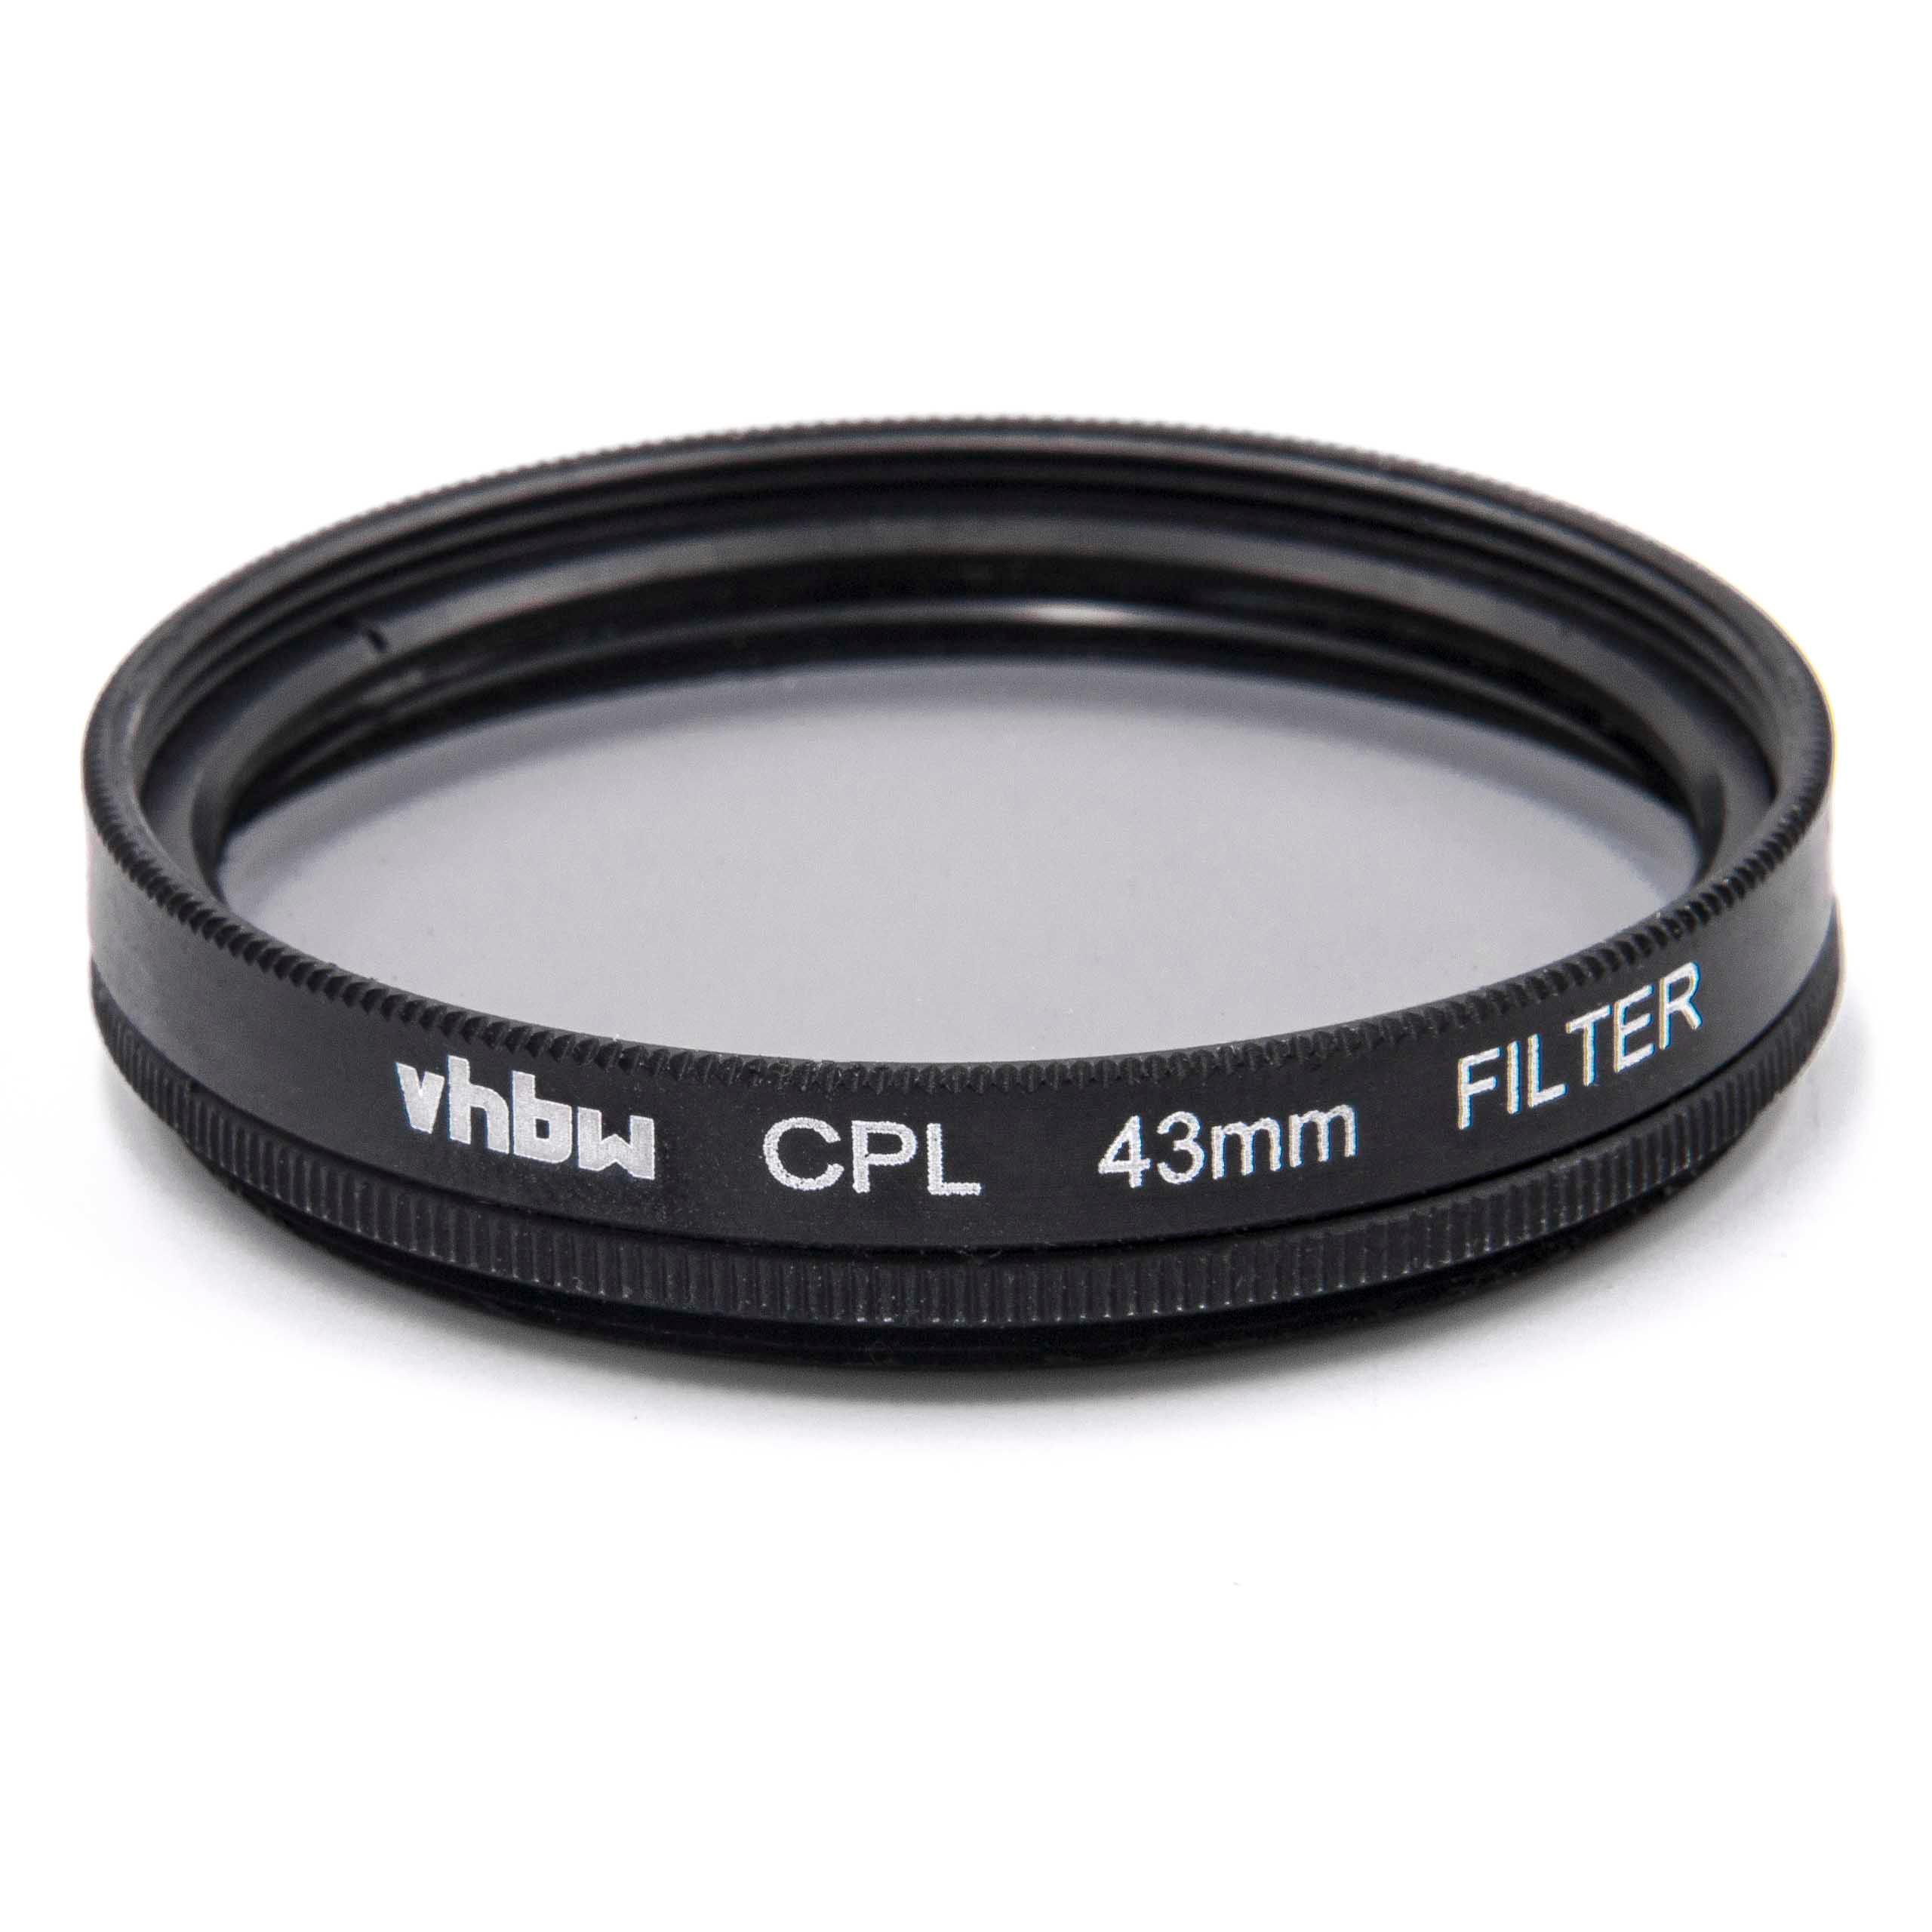 Filtro polarizador para objetivos y cámaras con rosca de filtro de 43 mm - Filtro CPL